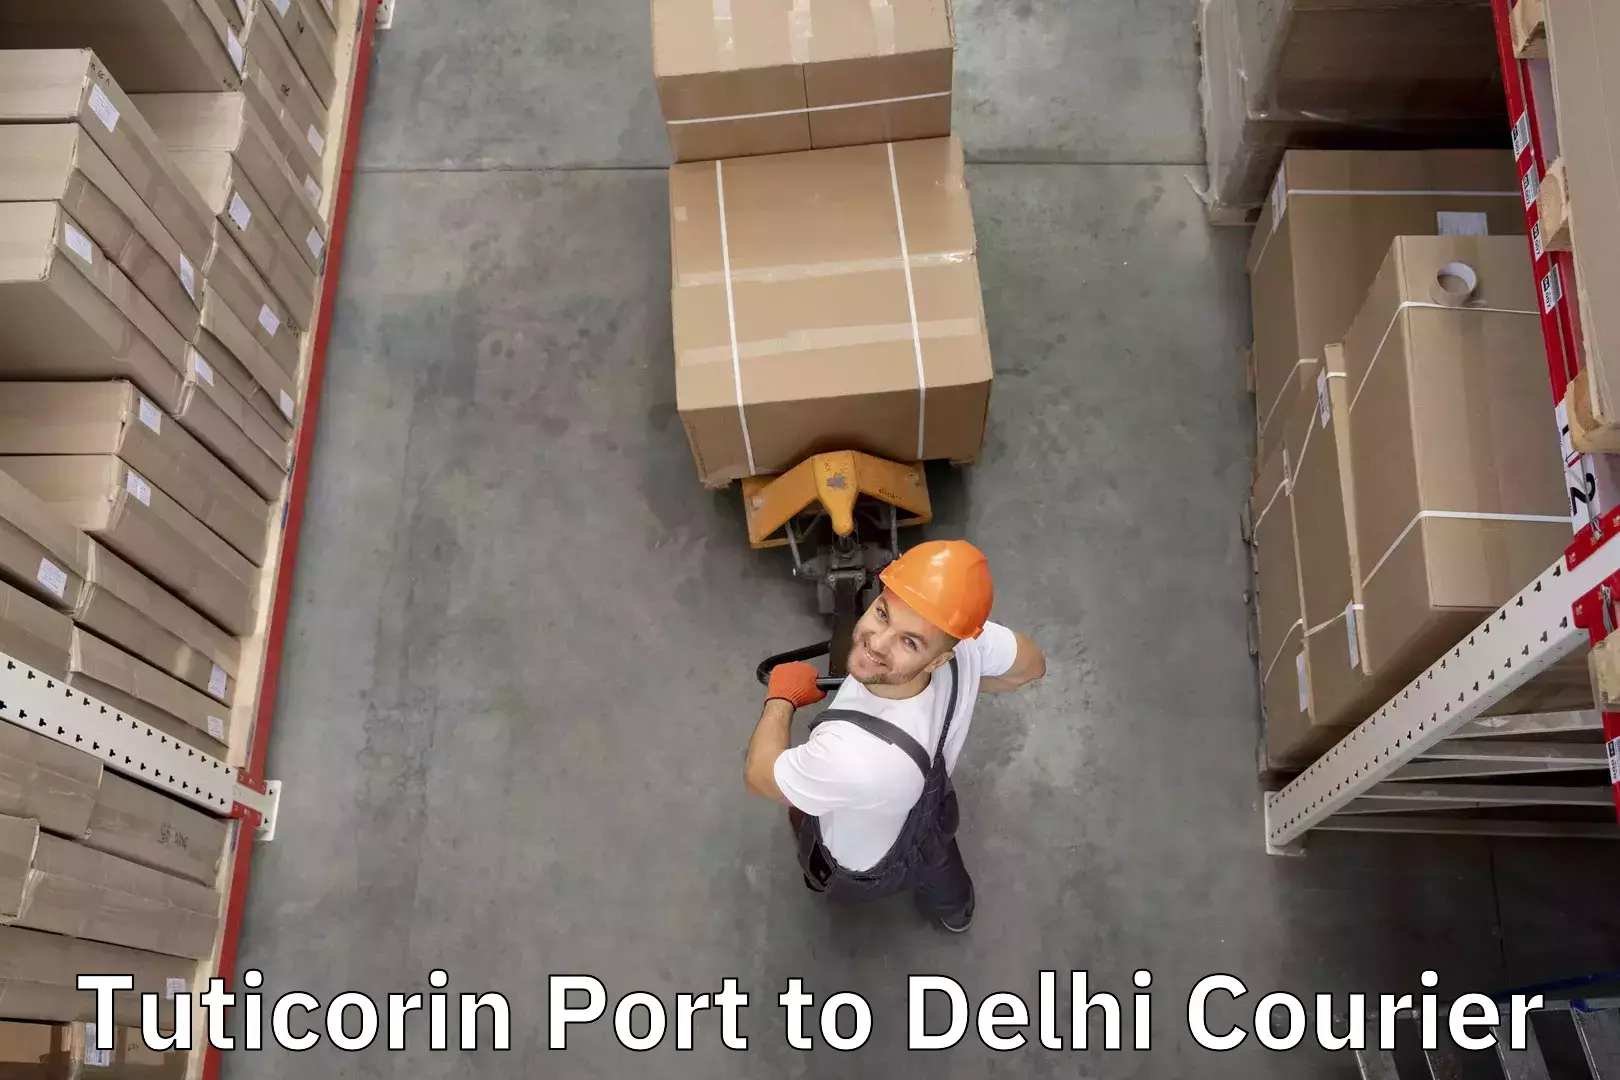 Baggage shipping service Tuticorin Port to Delhi